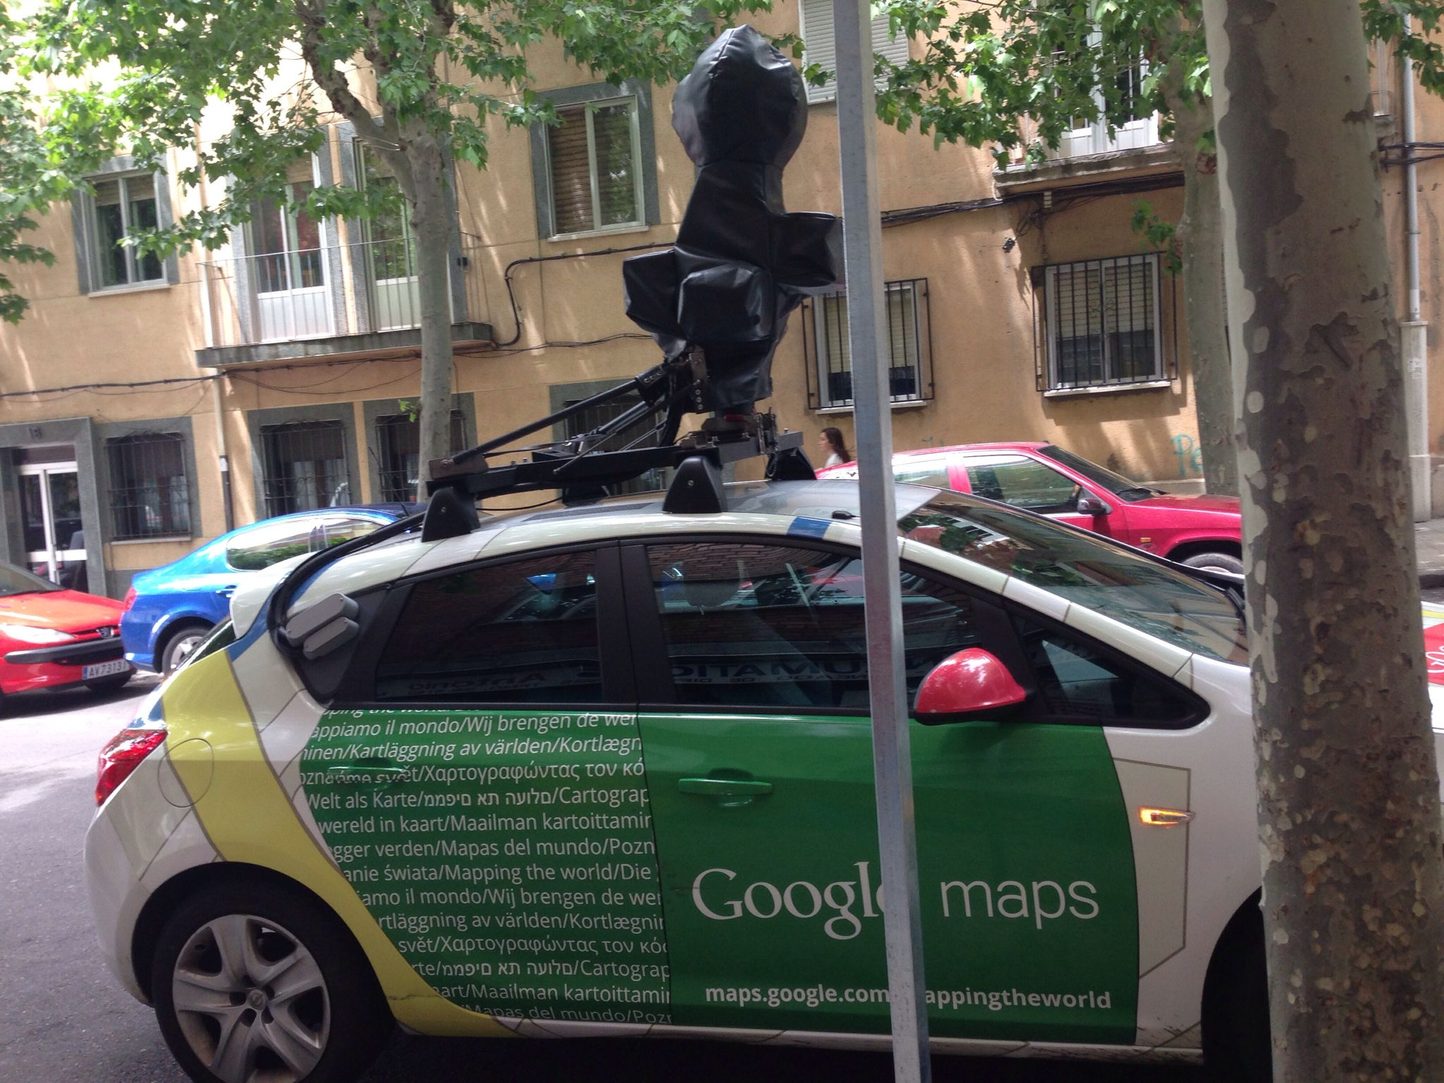 Y así es un coche de Google maps - meme